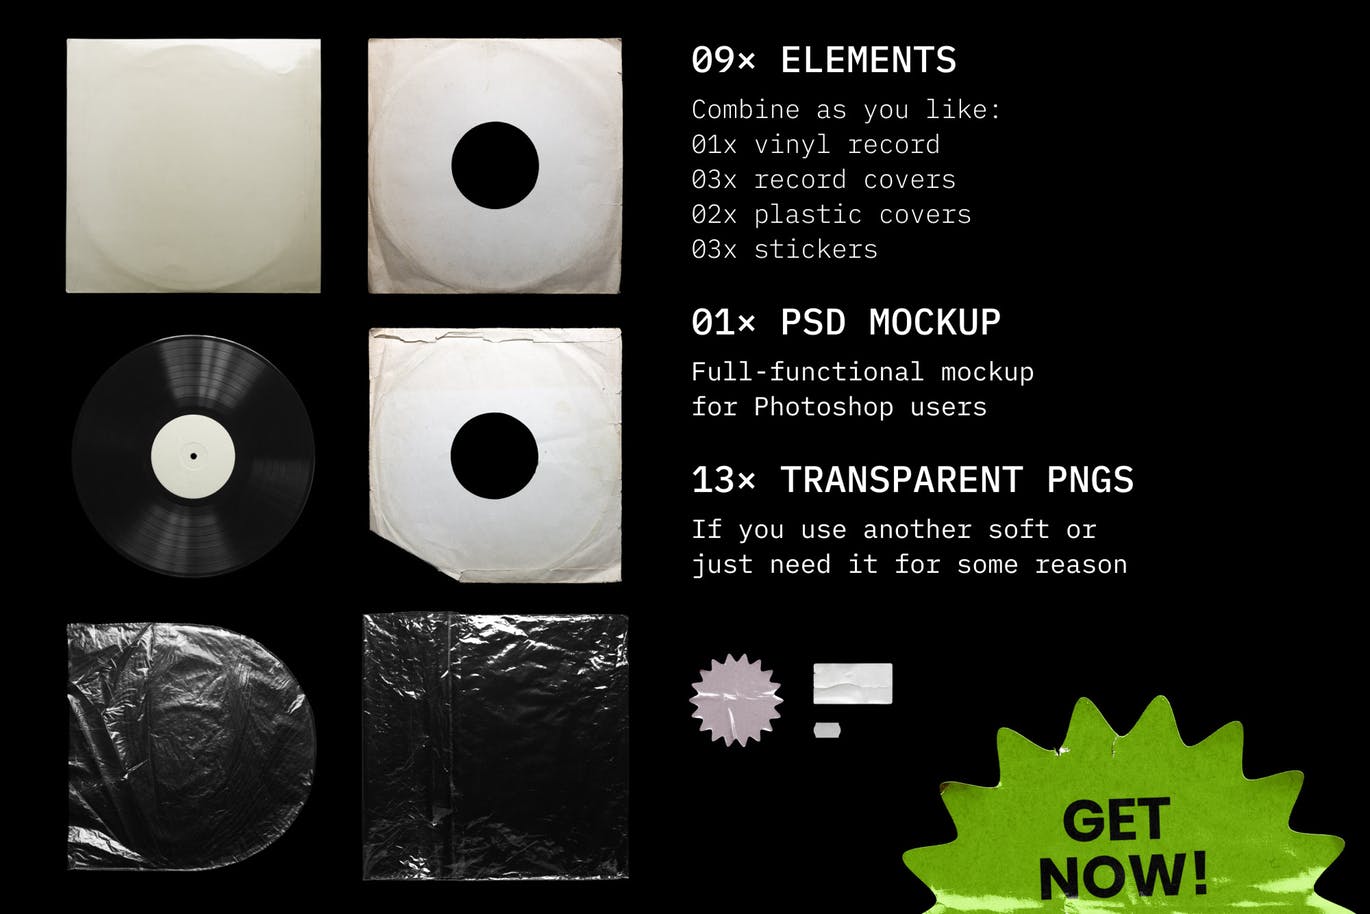 乙烯基唱片包装盒及封面设计图素材库精选模板 Vinyl Record Mockup插图(9)